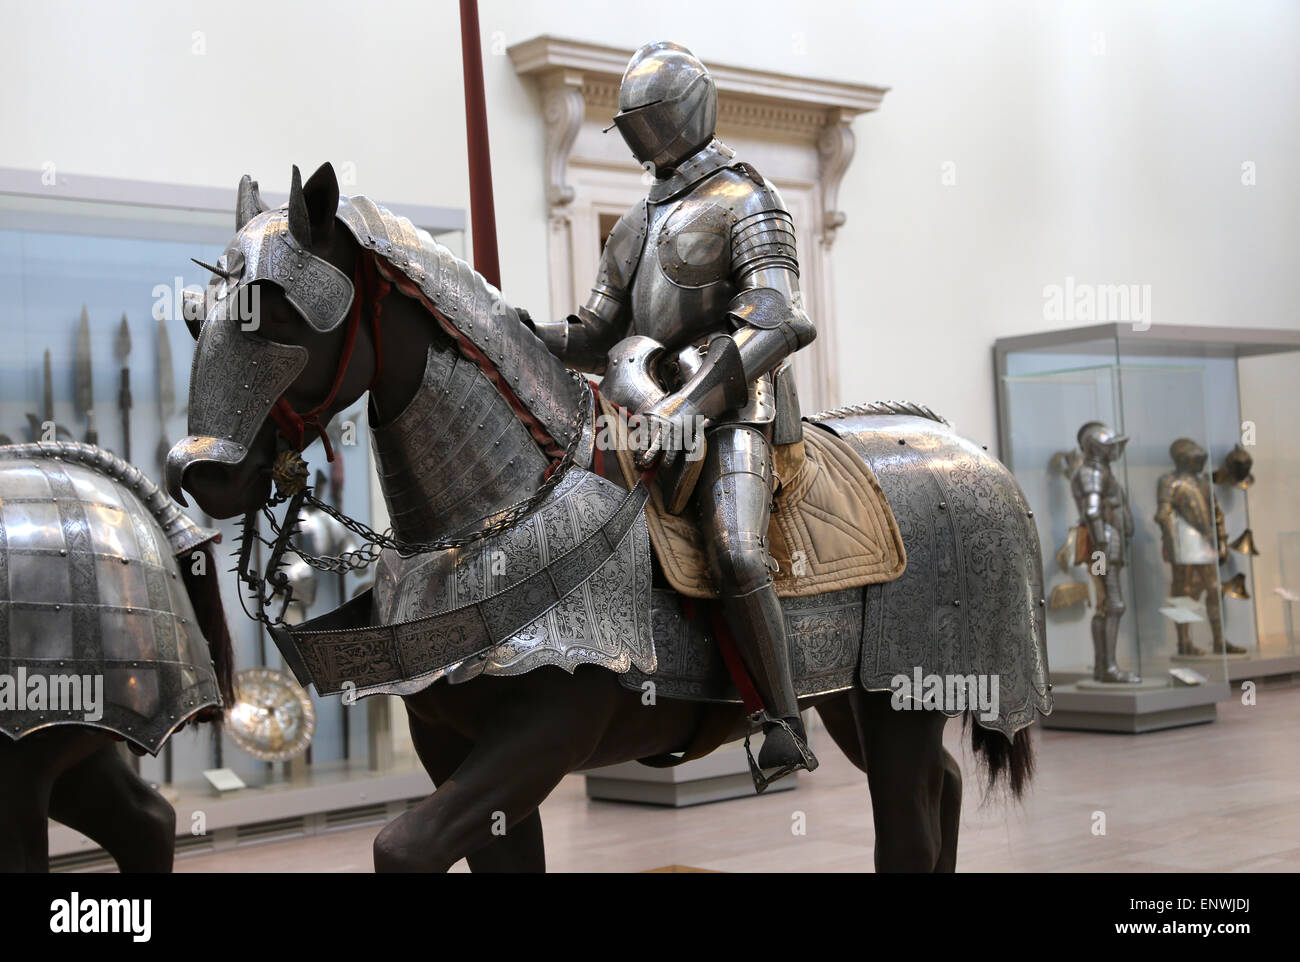 Armure pour combattre. Armure de plaque pour l'homme et le cheval. L'Europe. Metropolitan Museum of Art de New York. USA. Banque D'Images